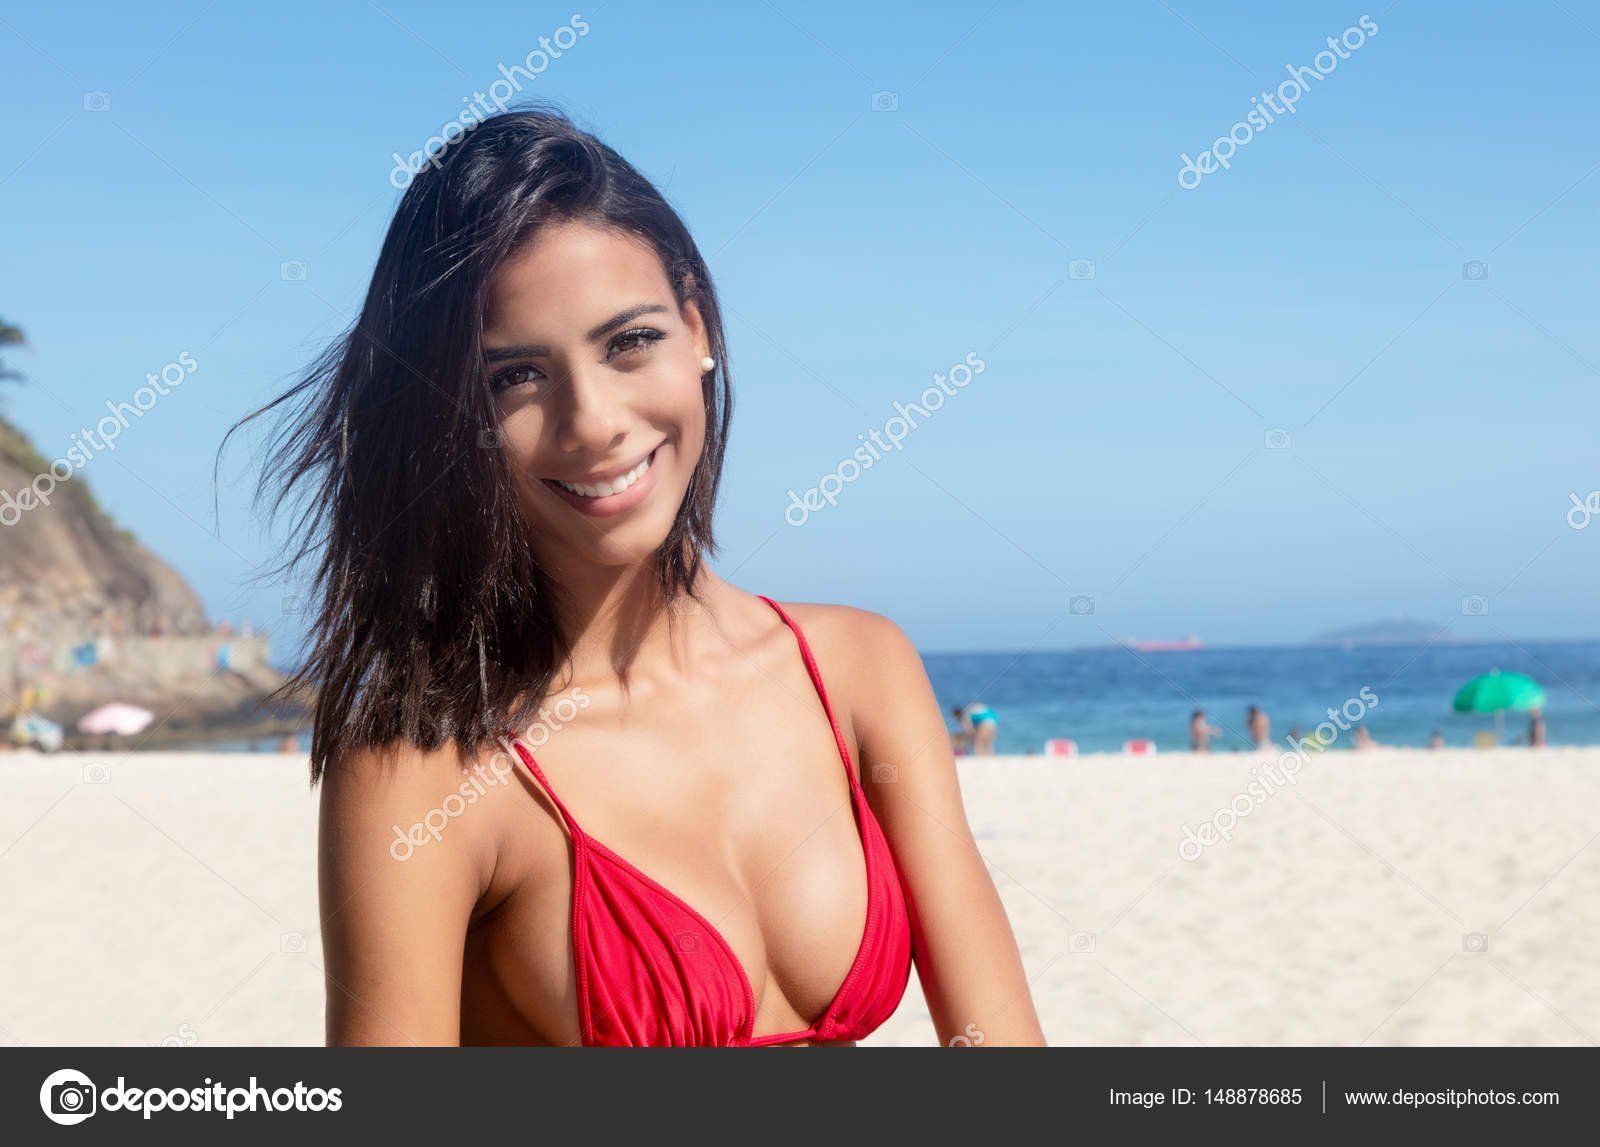 Bikini mexican photo woman